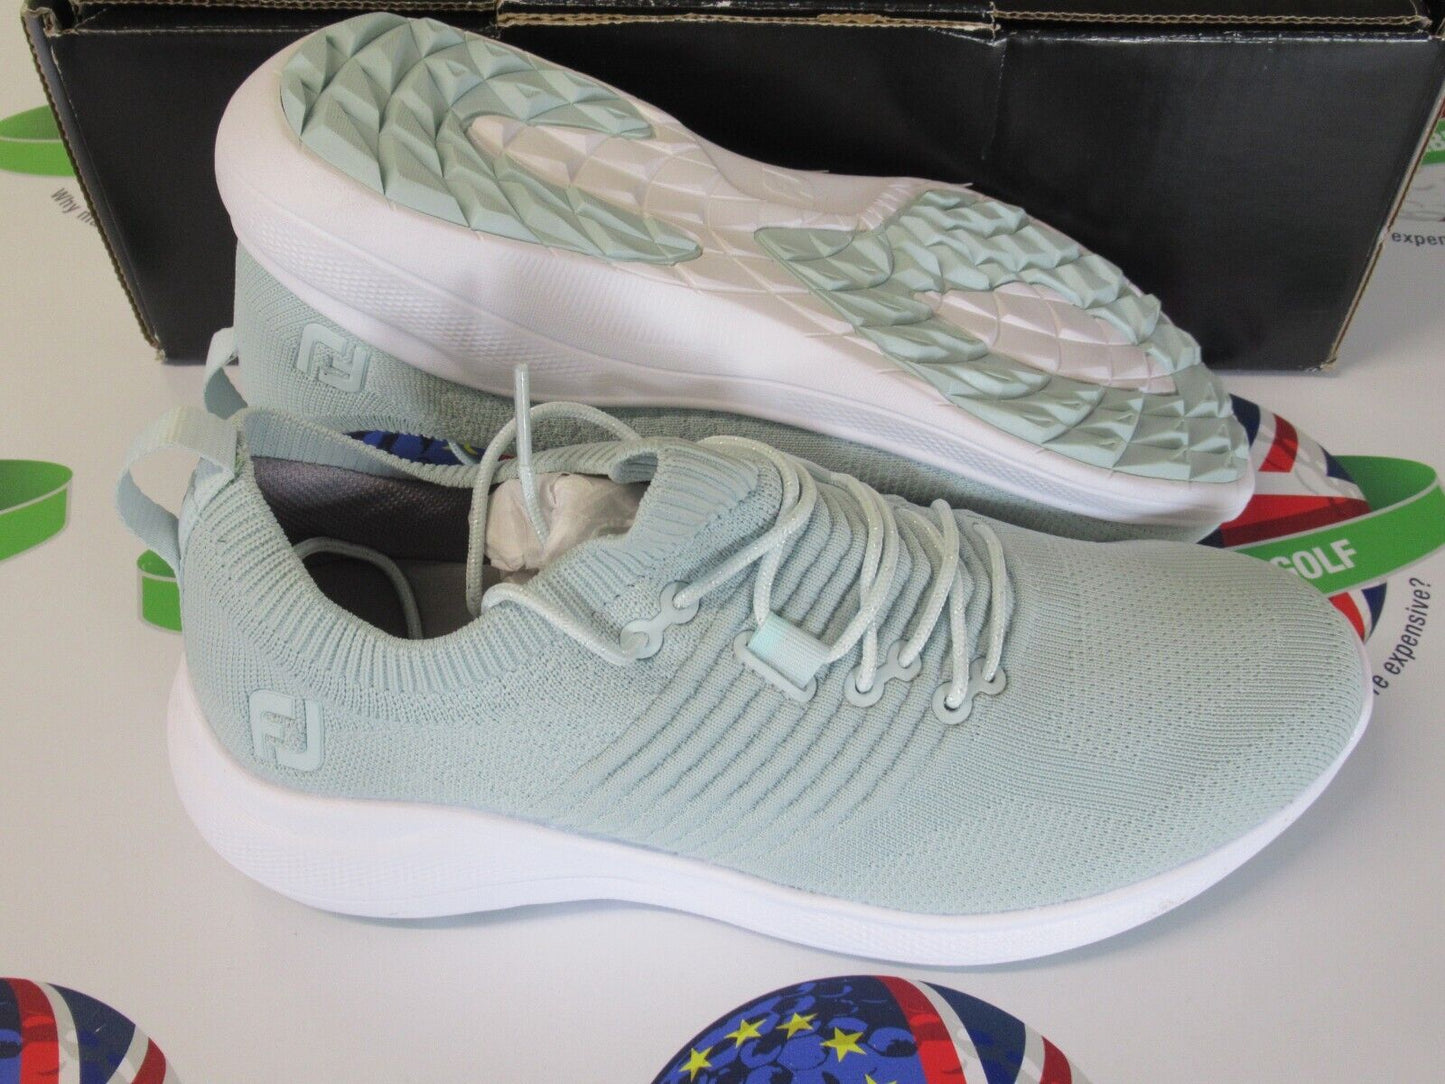 footjoy flex xp womens golf shoes turquoise/white 95334k uk size 6.5 medium